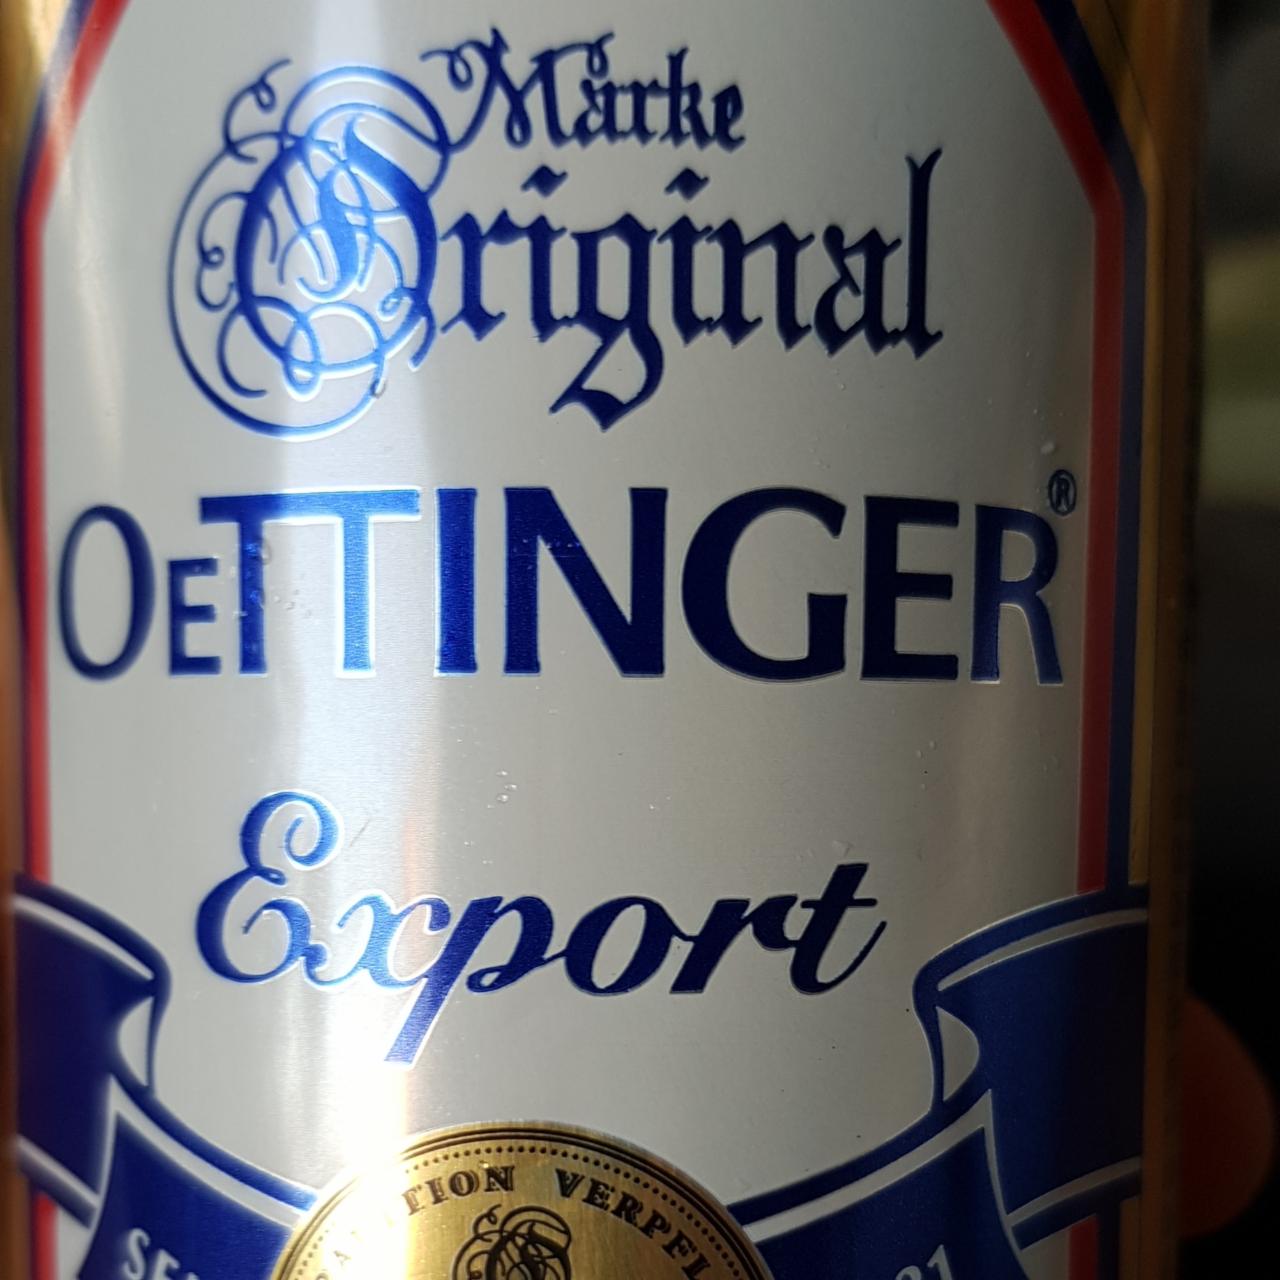 Фото - Пиво 5.4% светлое фильтрованное пастеризованное Export Oettinger